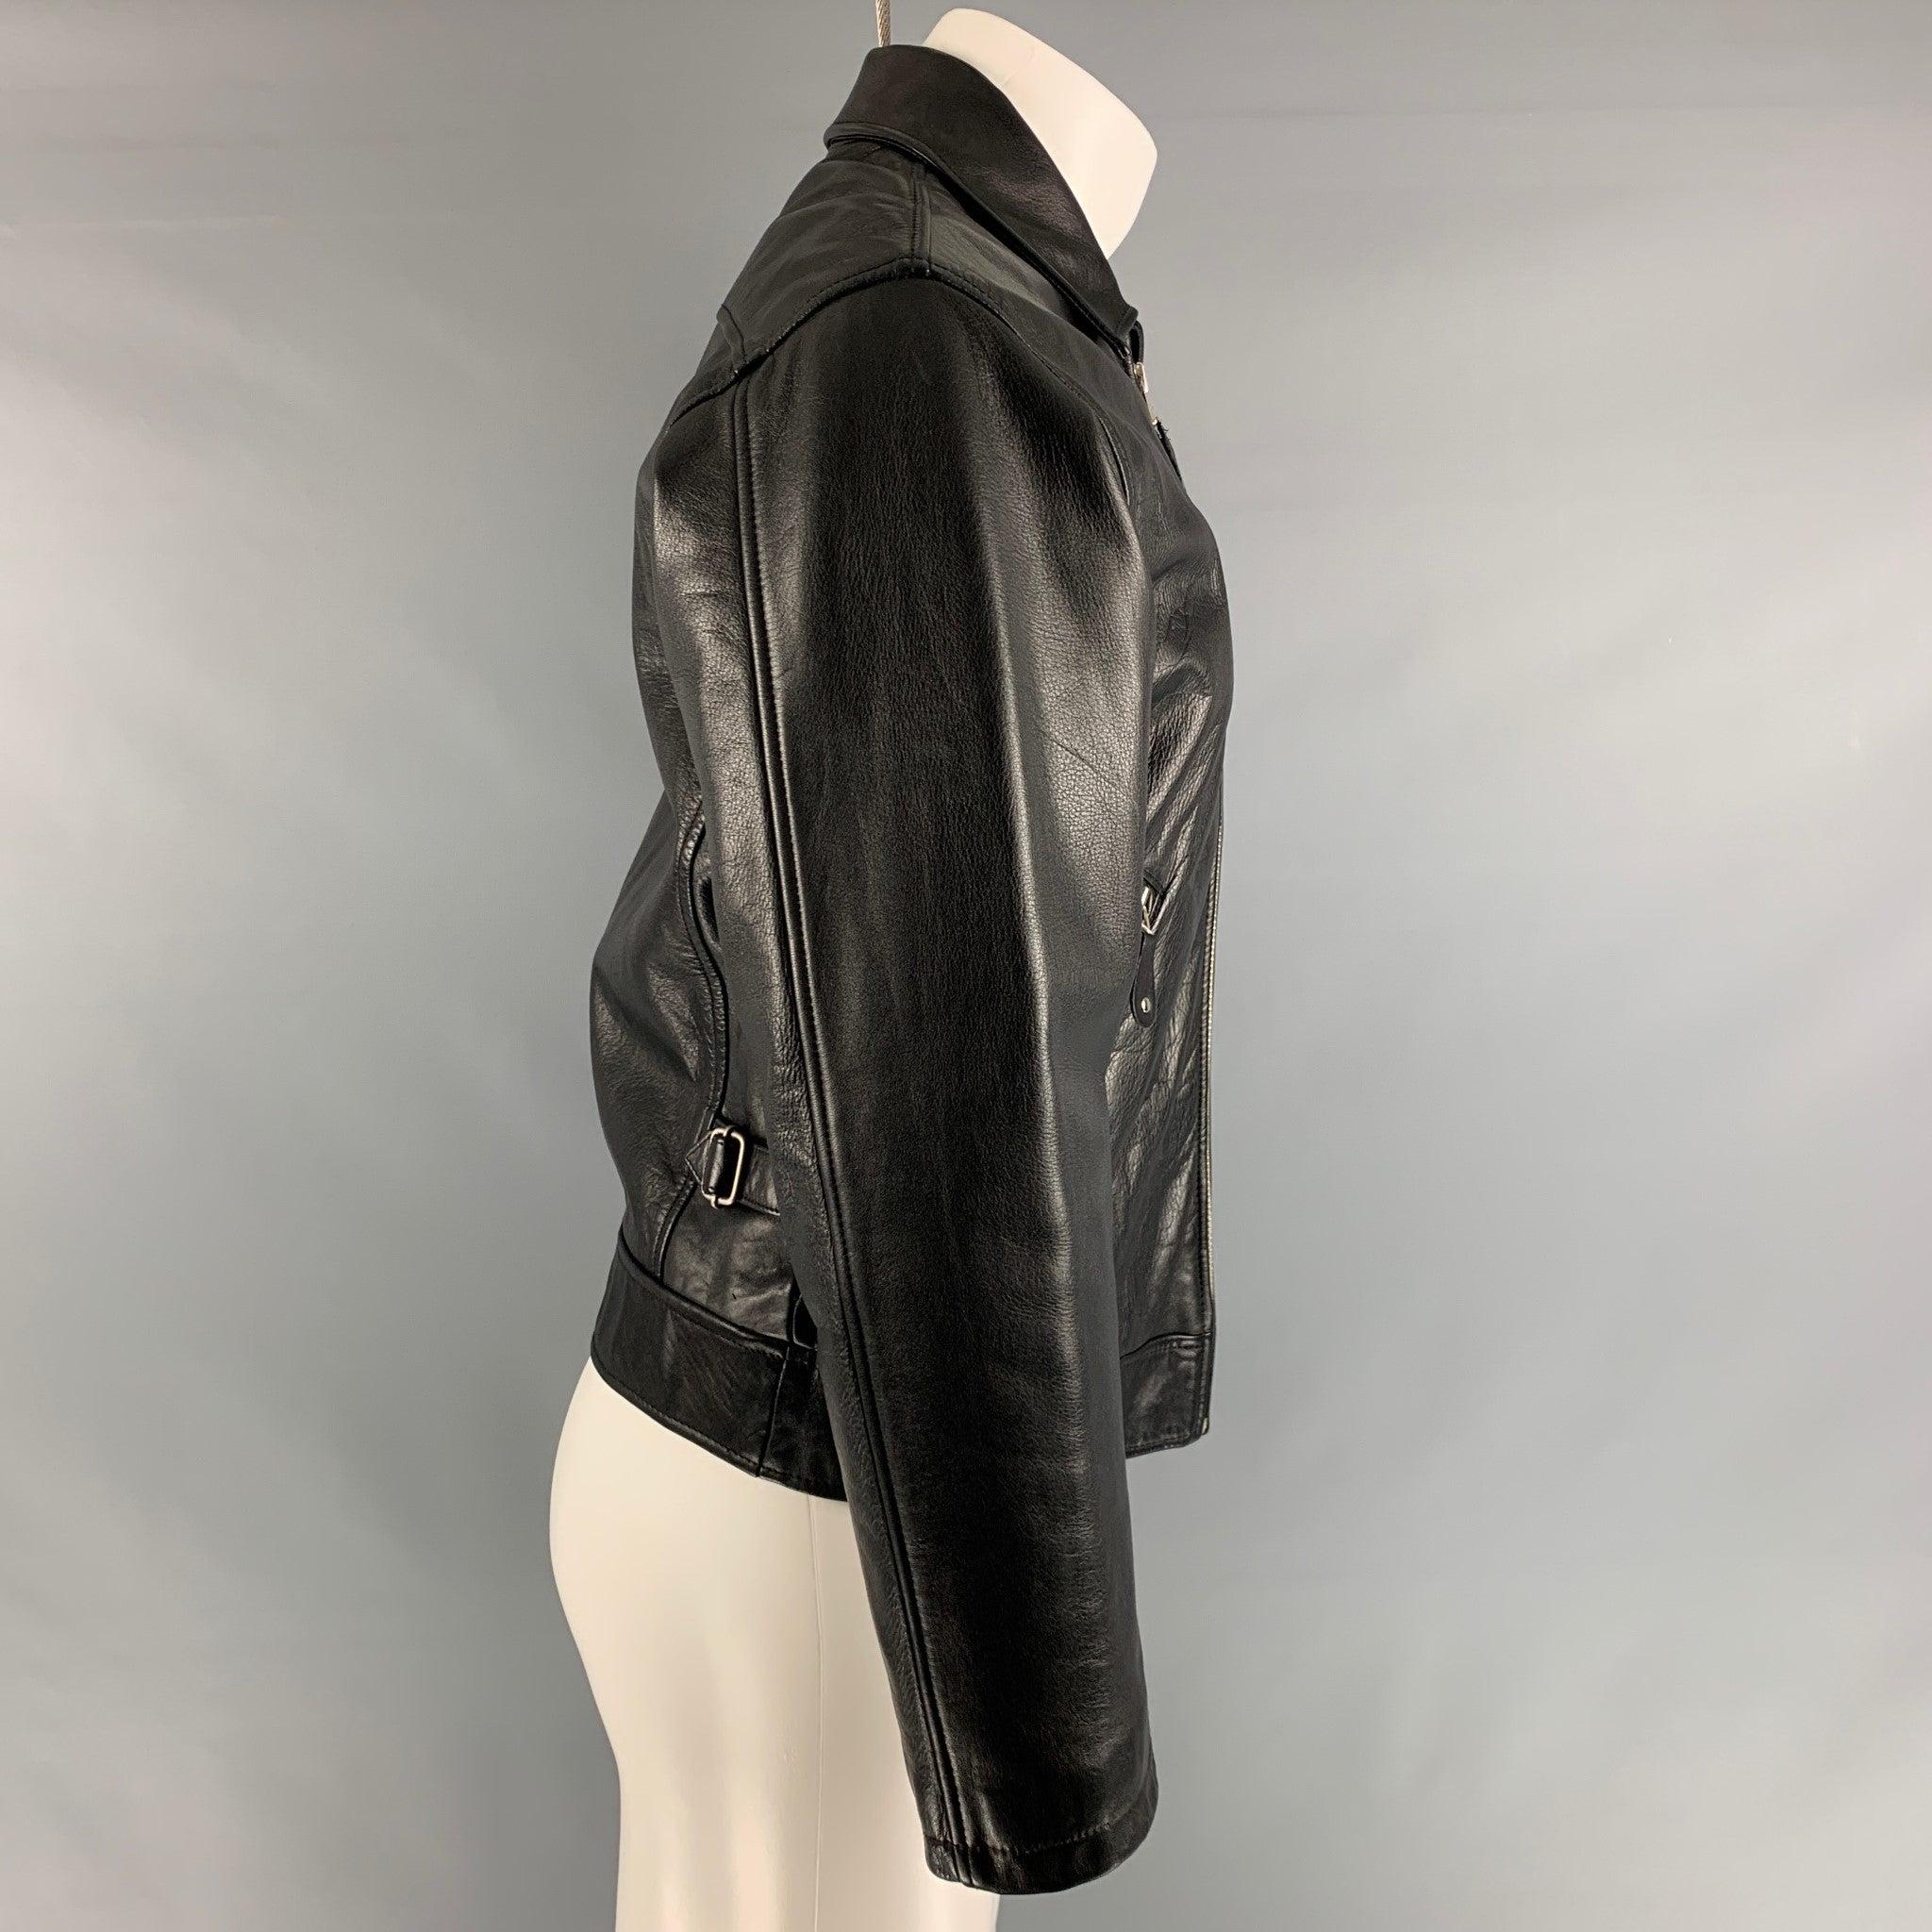 La veste vintage DONNA KARAN est en cuir noir et présente une doublure matelassée, un col pointu, une fermeture éclair sur le devant et des poches zippées. Très bon état d'origine. Signes mineurs d'usure. 

Marqué :   S 

Mesures : 
 
Épaule : 19